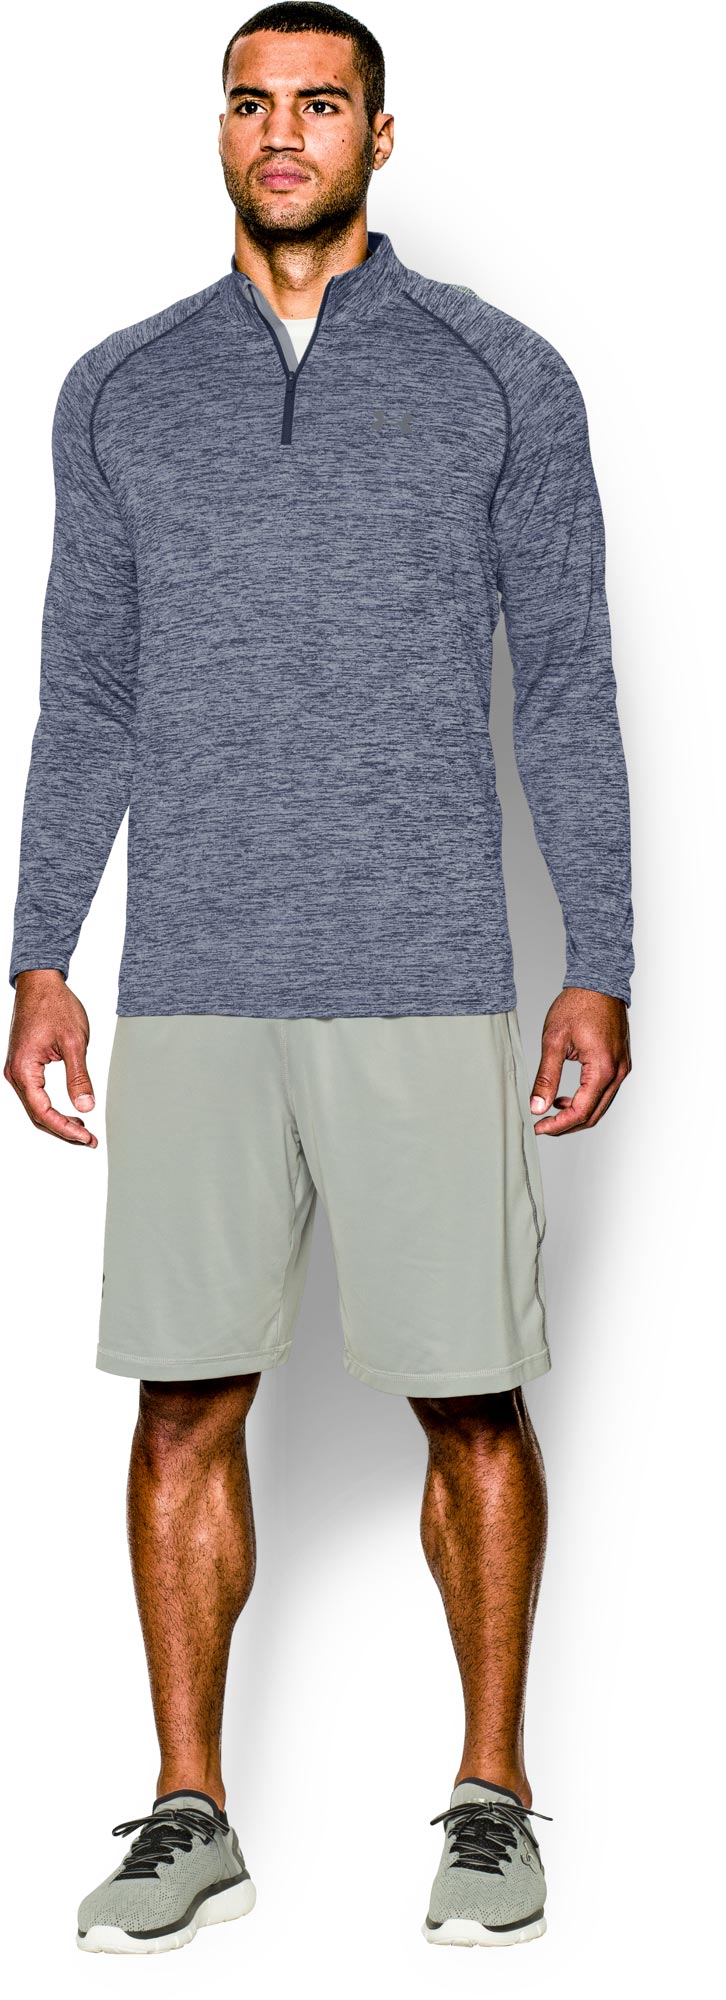 Men's functional sweatshirt